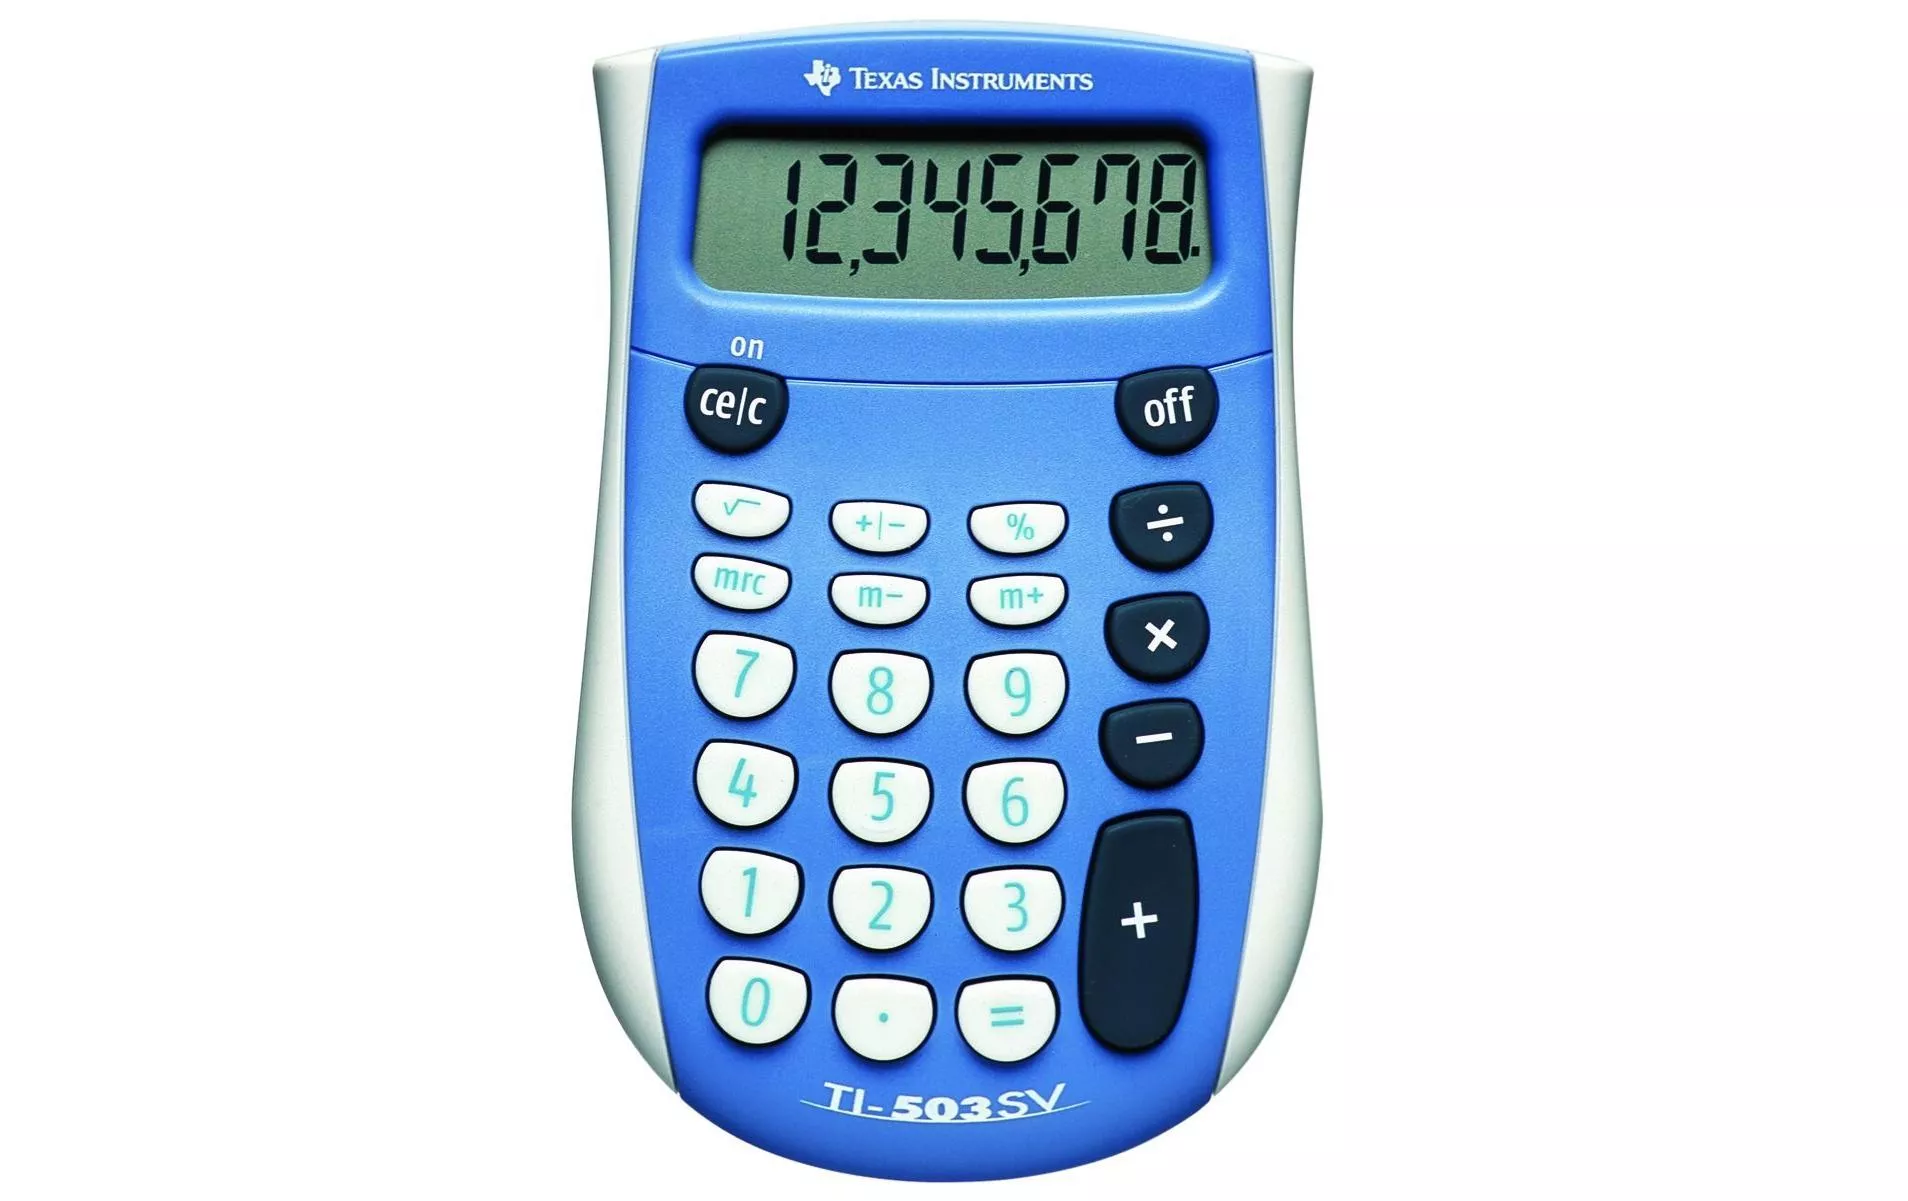 Taschenrechner TI-503 SV